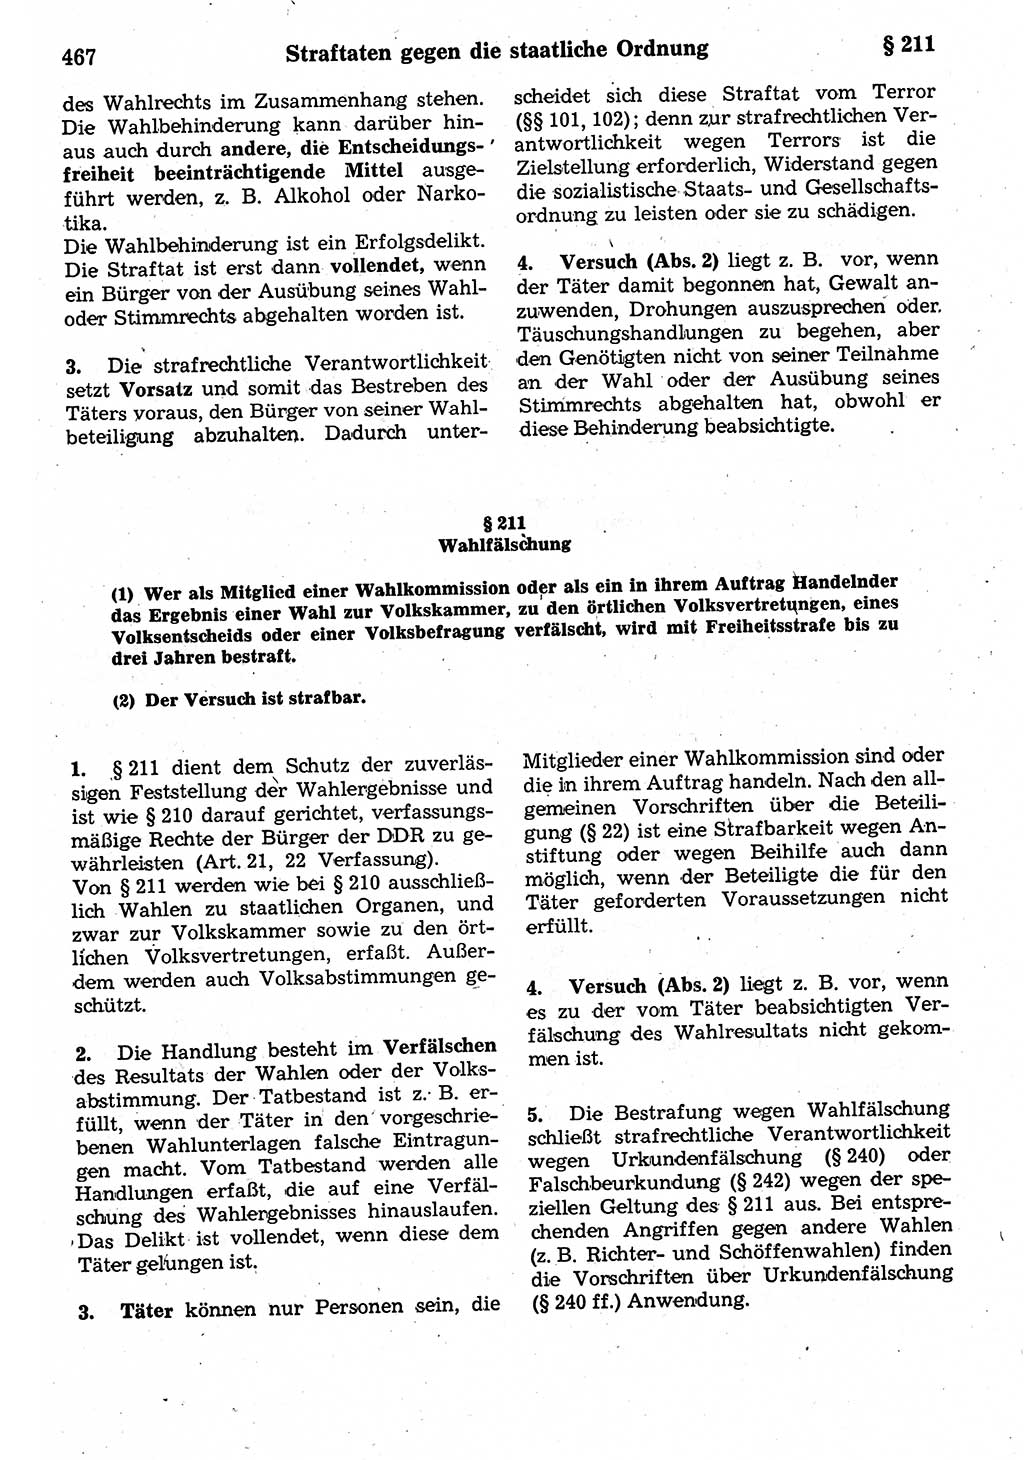 Strafrecht der Deutschen Demokratischen Republik (DDR), Kommentar zum Strafgesetzbuch (StGB) 1987, Seite 467 (Strafr. DDR Komm. StGB 1987, S. 467)